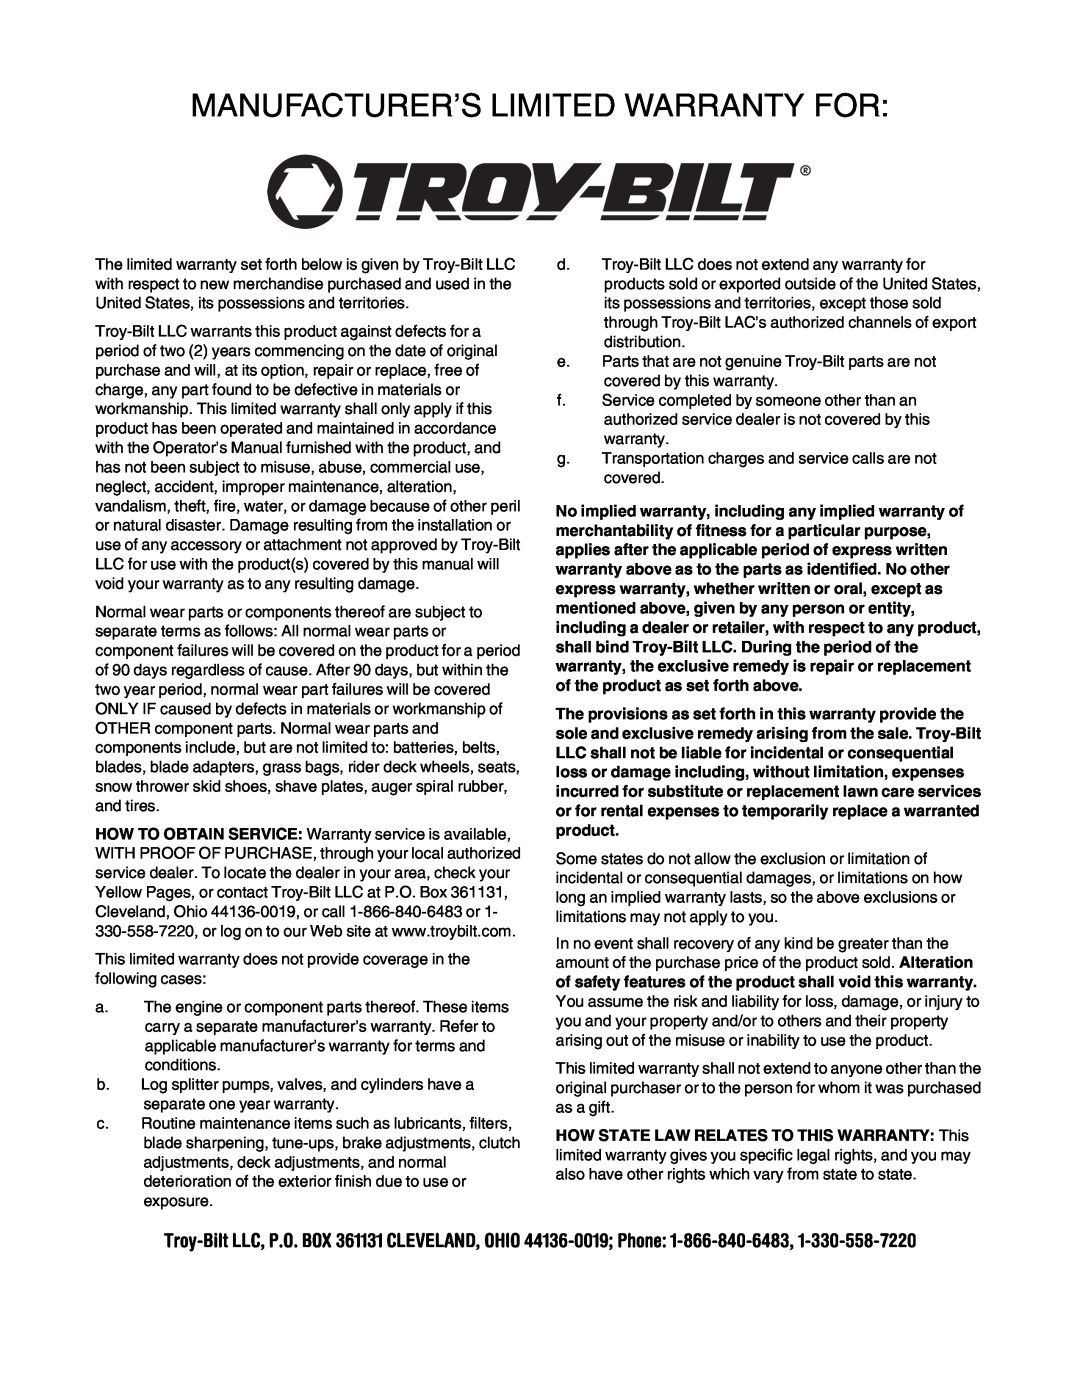 Troy-Bilt 106 manual Manufacturer’S Limited Warranty For 